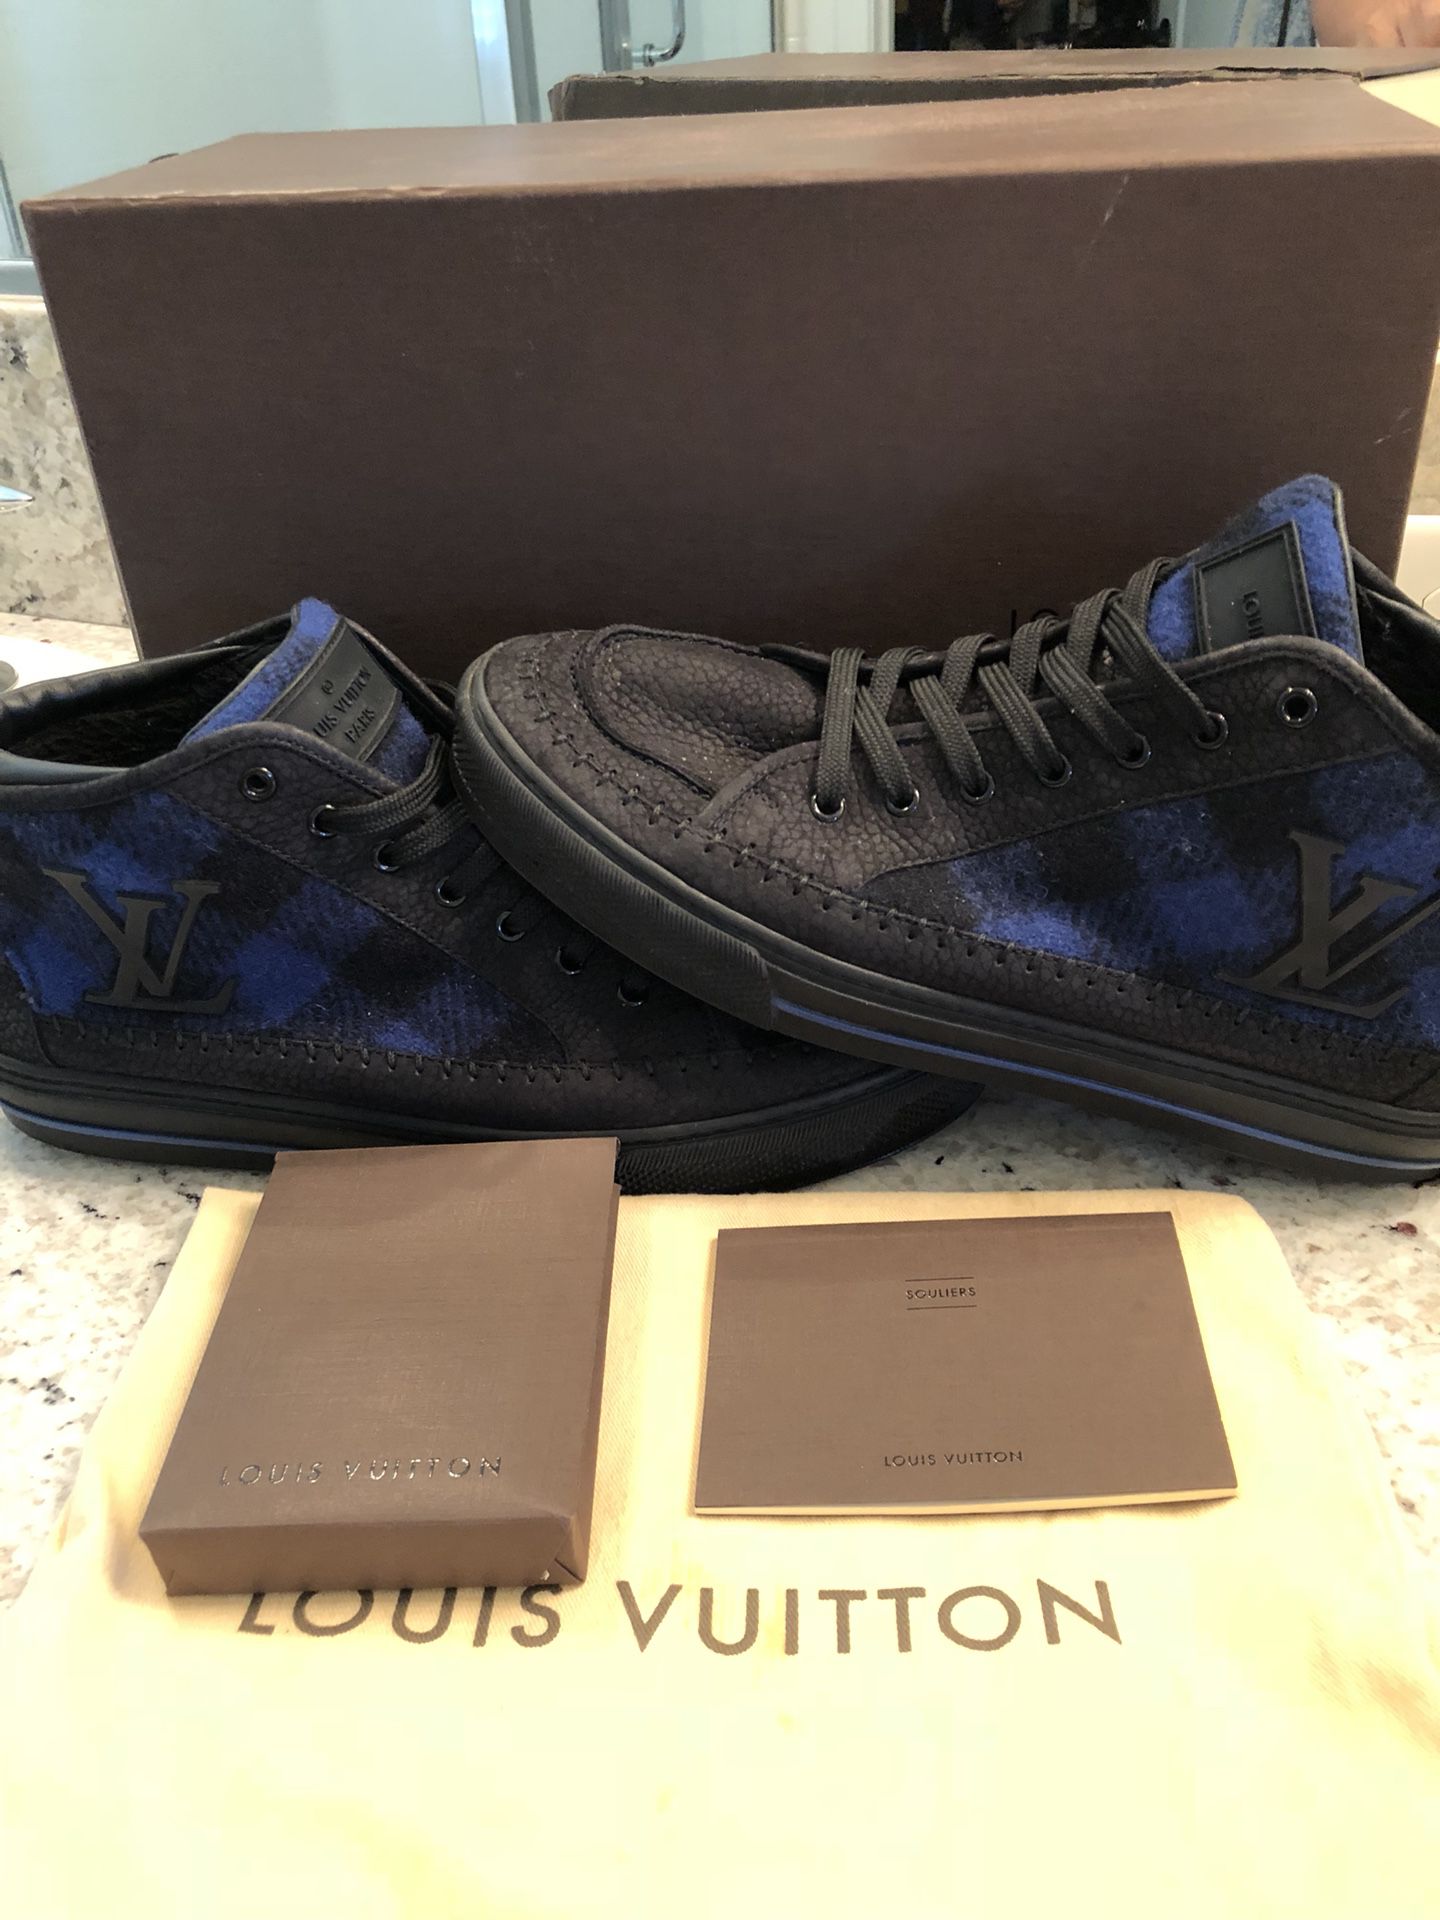 Louis Vuitton men’s size 91/2